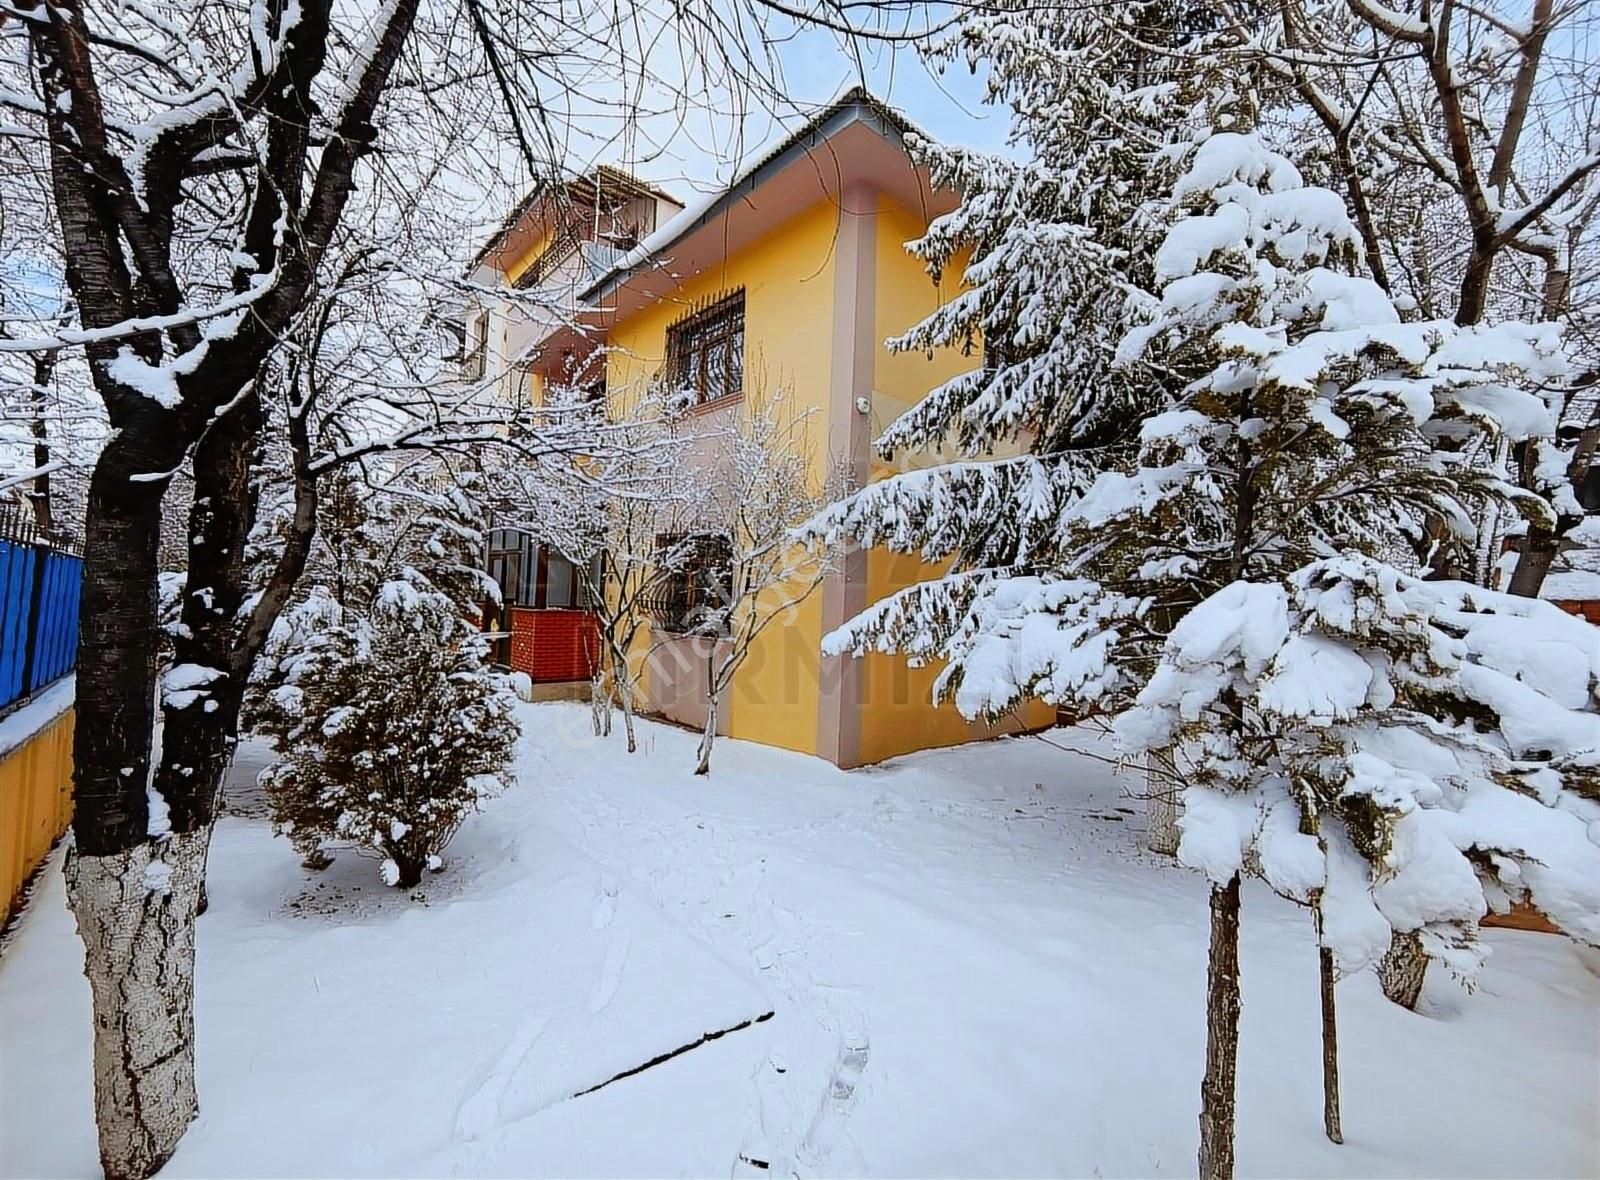 Palandöken Adnan Menderes Satılık Villa Re/max Kırmızı'dan Yıldızkent'te Satılık 5+1 Tripleks Villa